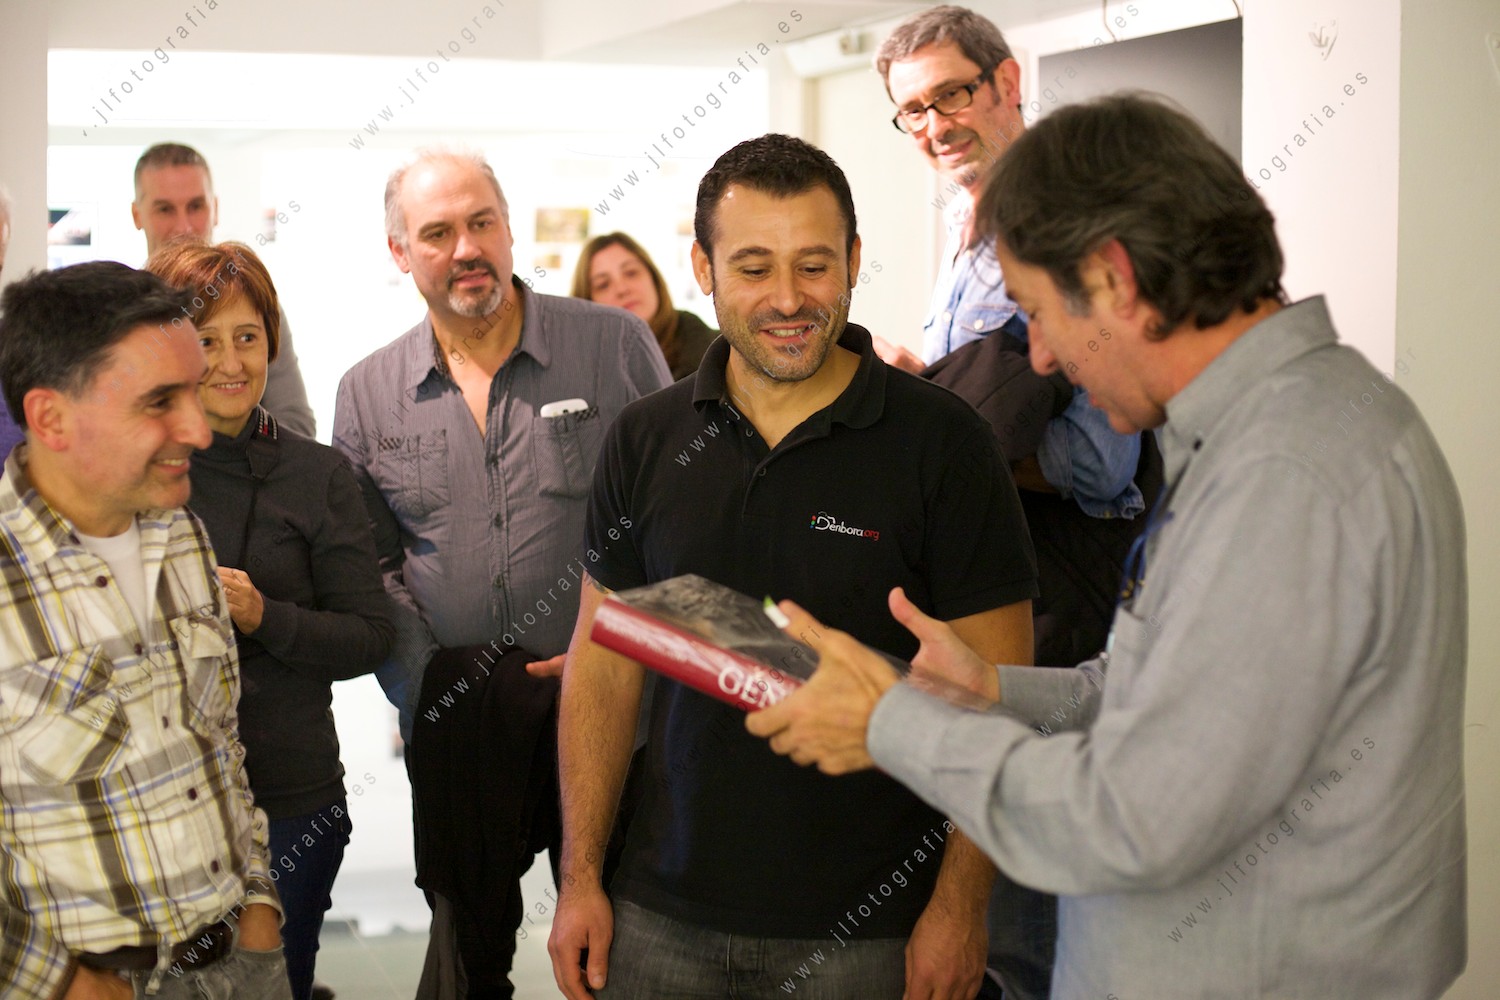 Juan Torre, fotógrafo de prensa, recibiendo el libro Génesis de Sebastiao Salgado, de manos de un socio de Denbora 